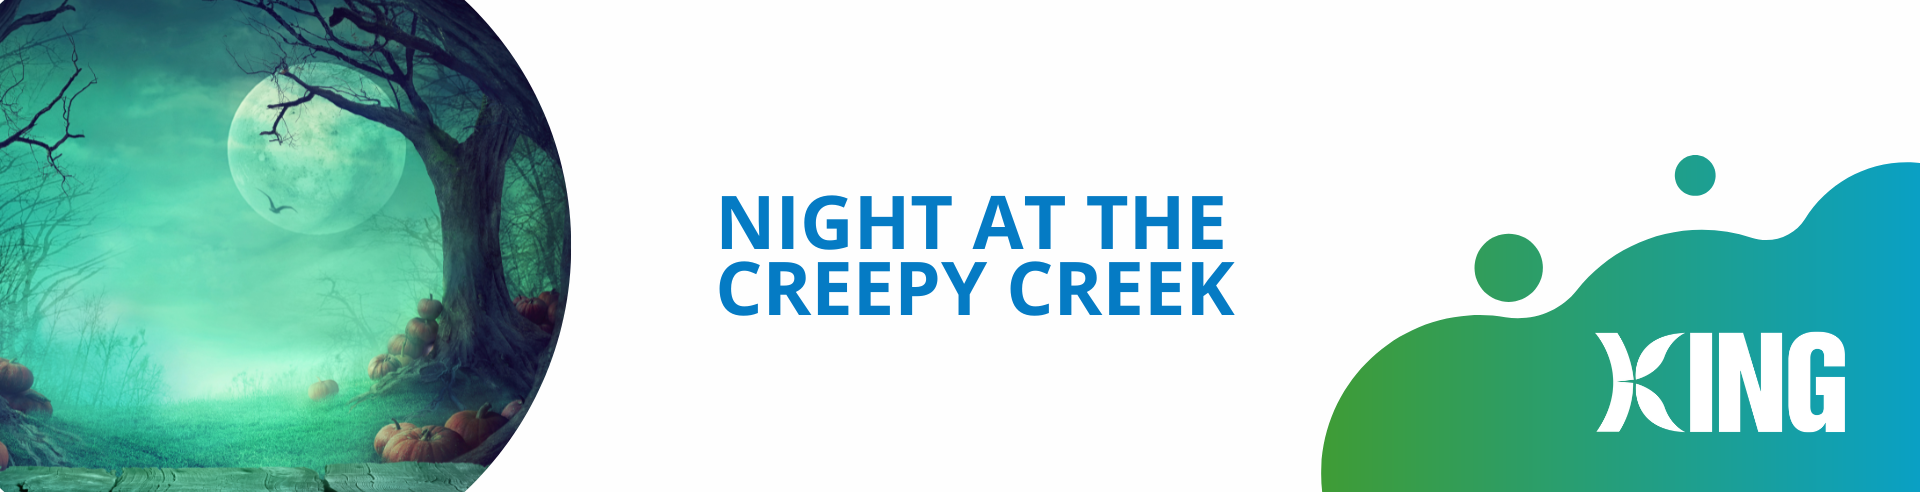 Night at the Creepy Creek